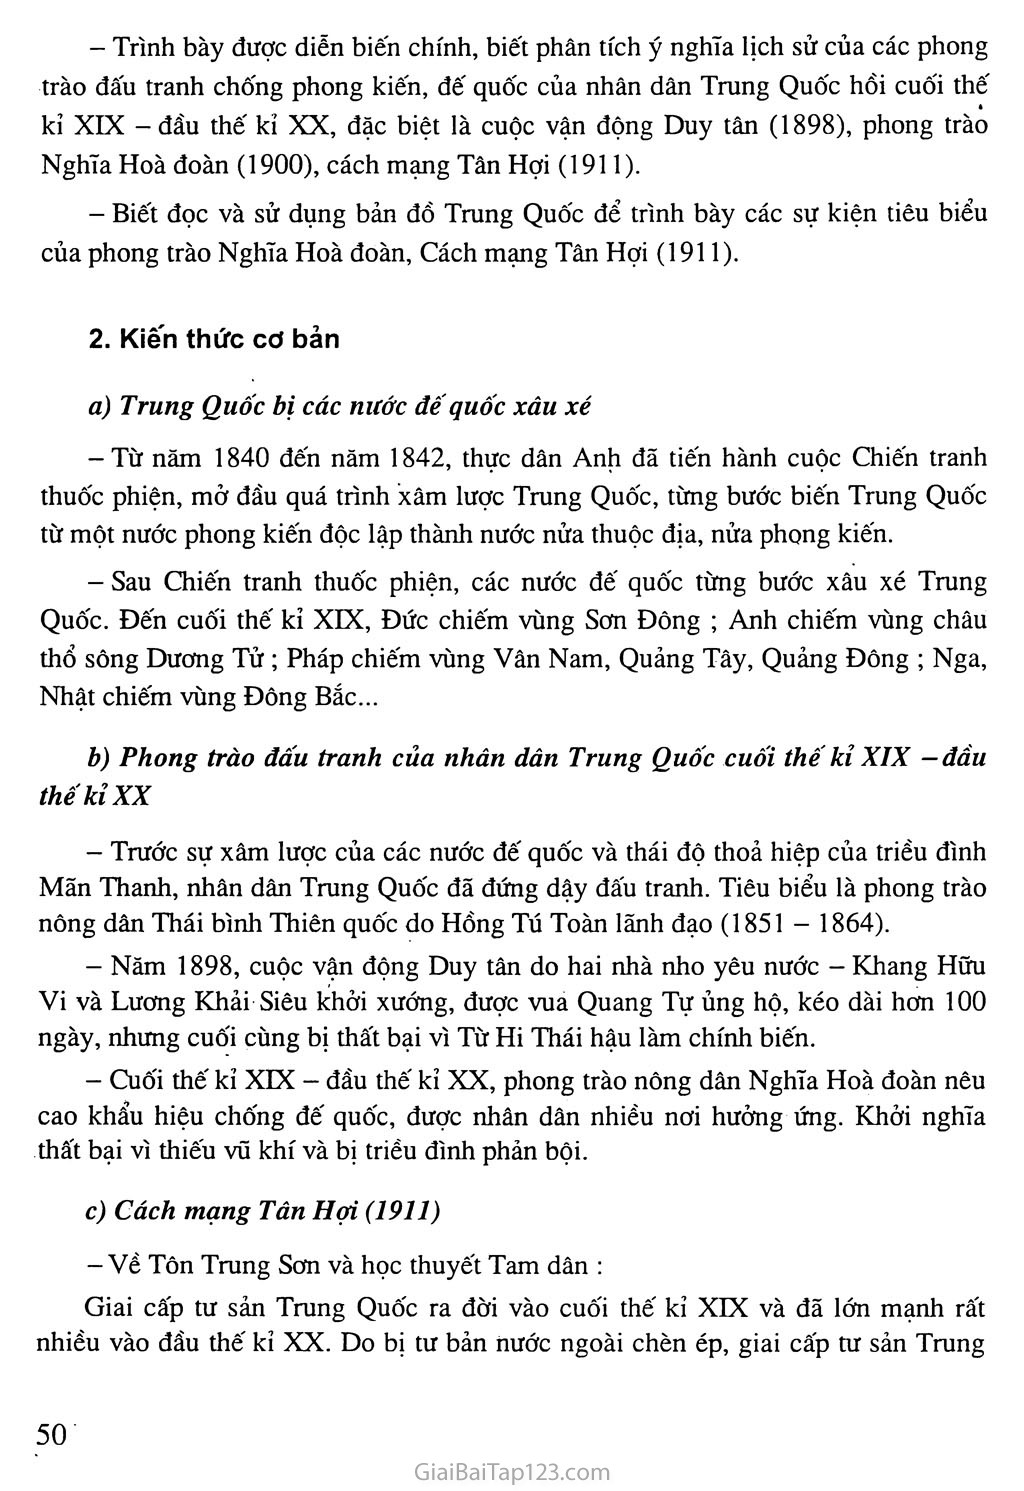 Bài 10: Trung Quốc giữa thế kỉ XIX - đầu thế kỉ XX trang 2